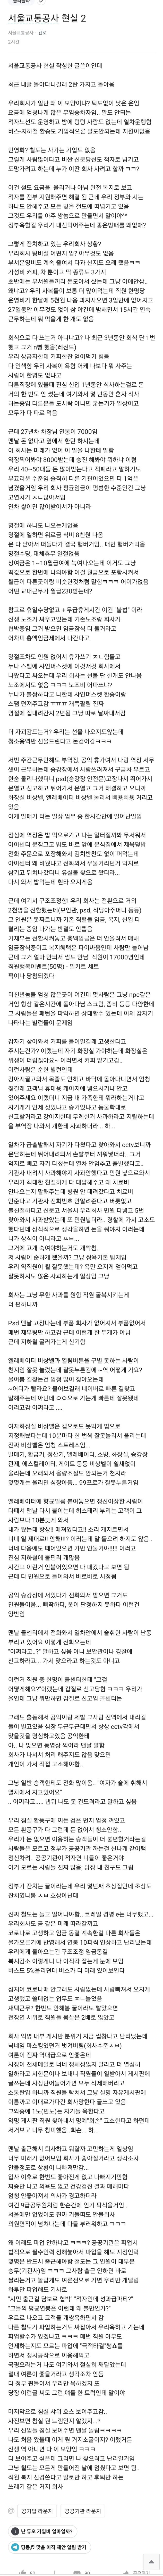 블라인드)서울교통공사의 현실2 | 엠봉 mbong.kr